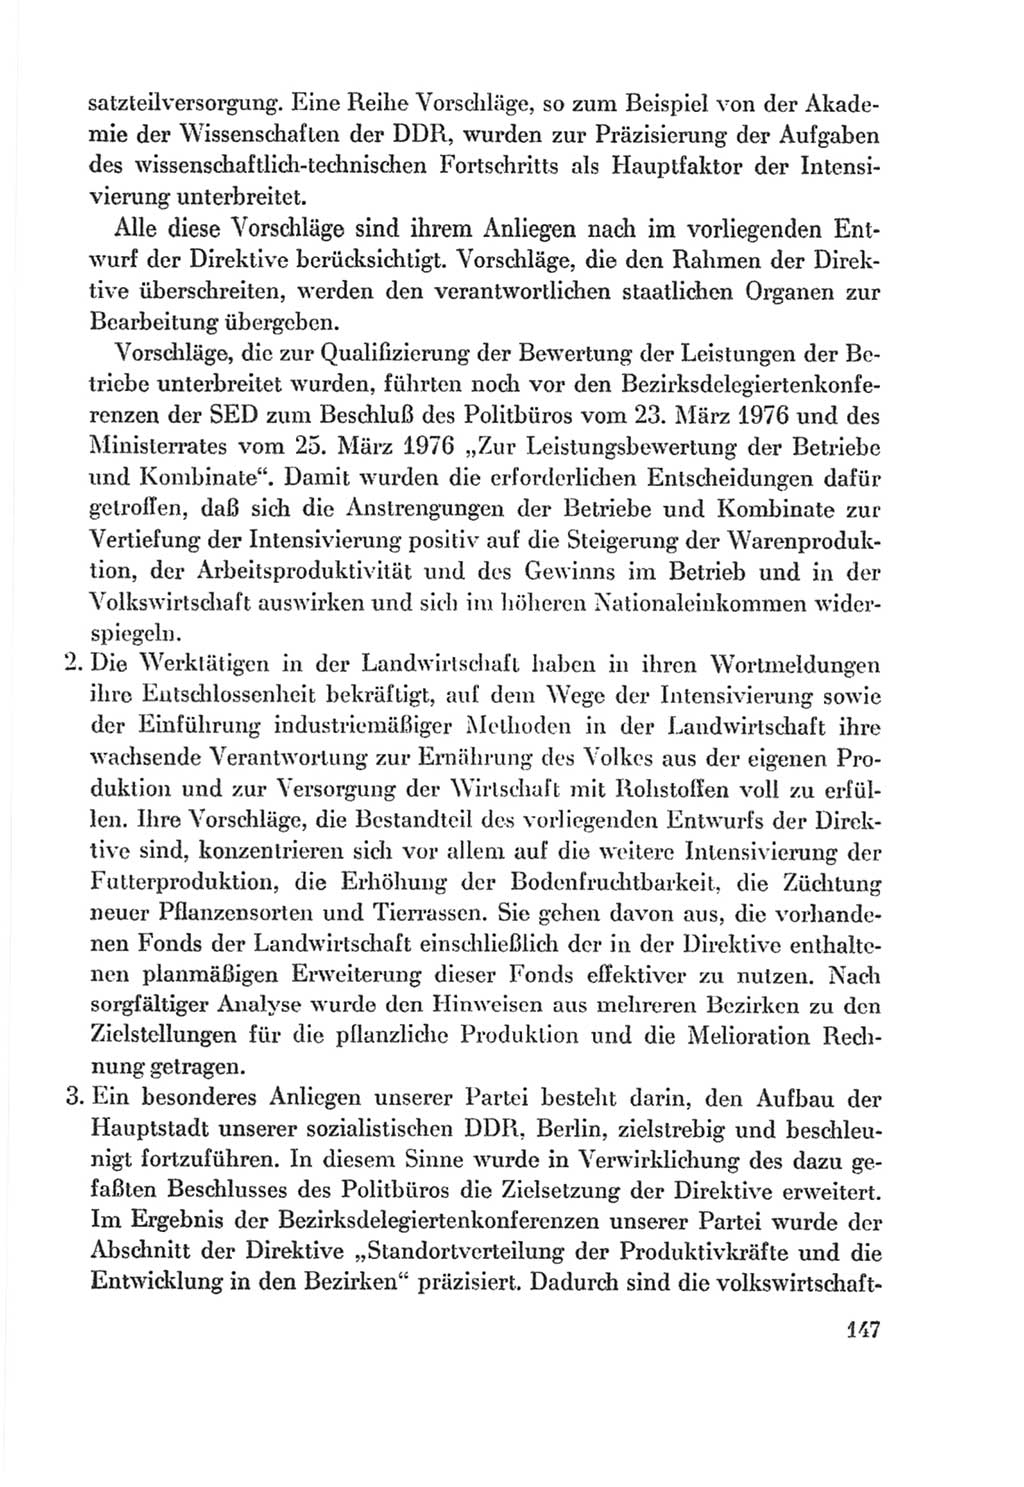 Protokoll der Verhandlungen des Ⅸ. Parteitages der Sozialistischen Einheitspartei Deutschlands (SED) [Deutsche Demokratische Republik (DDR)] 1976, Band 2, Seite 147 (Prot. Verh. Ⅸ. PT SED DDR 1976, Bd. 2, S. 147)